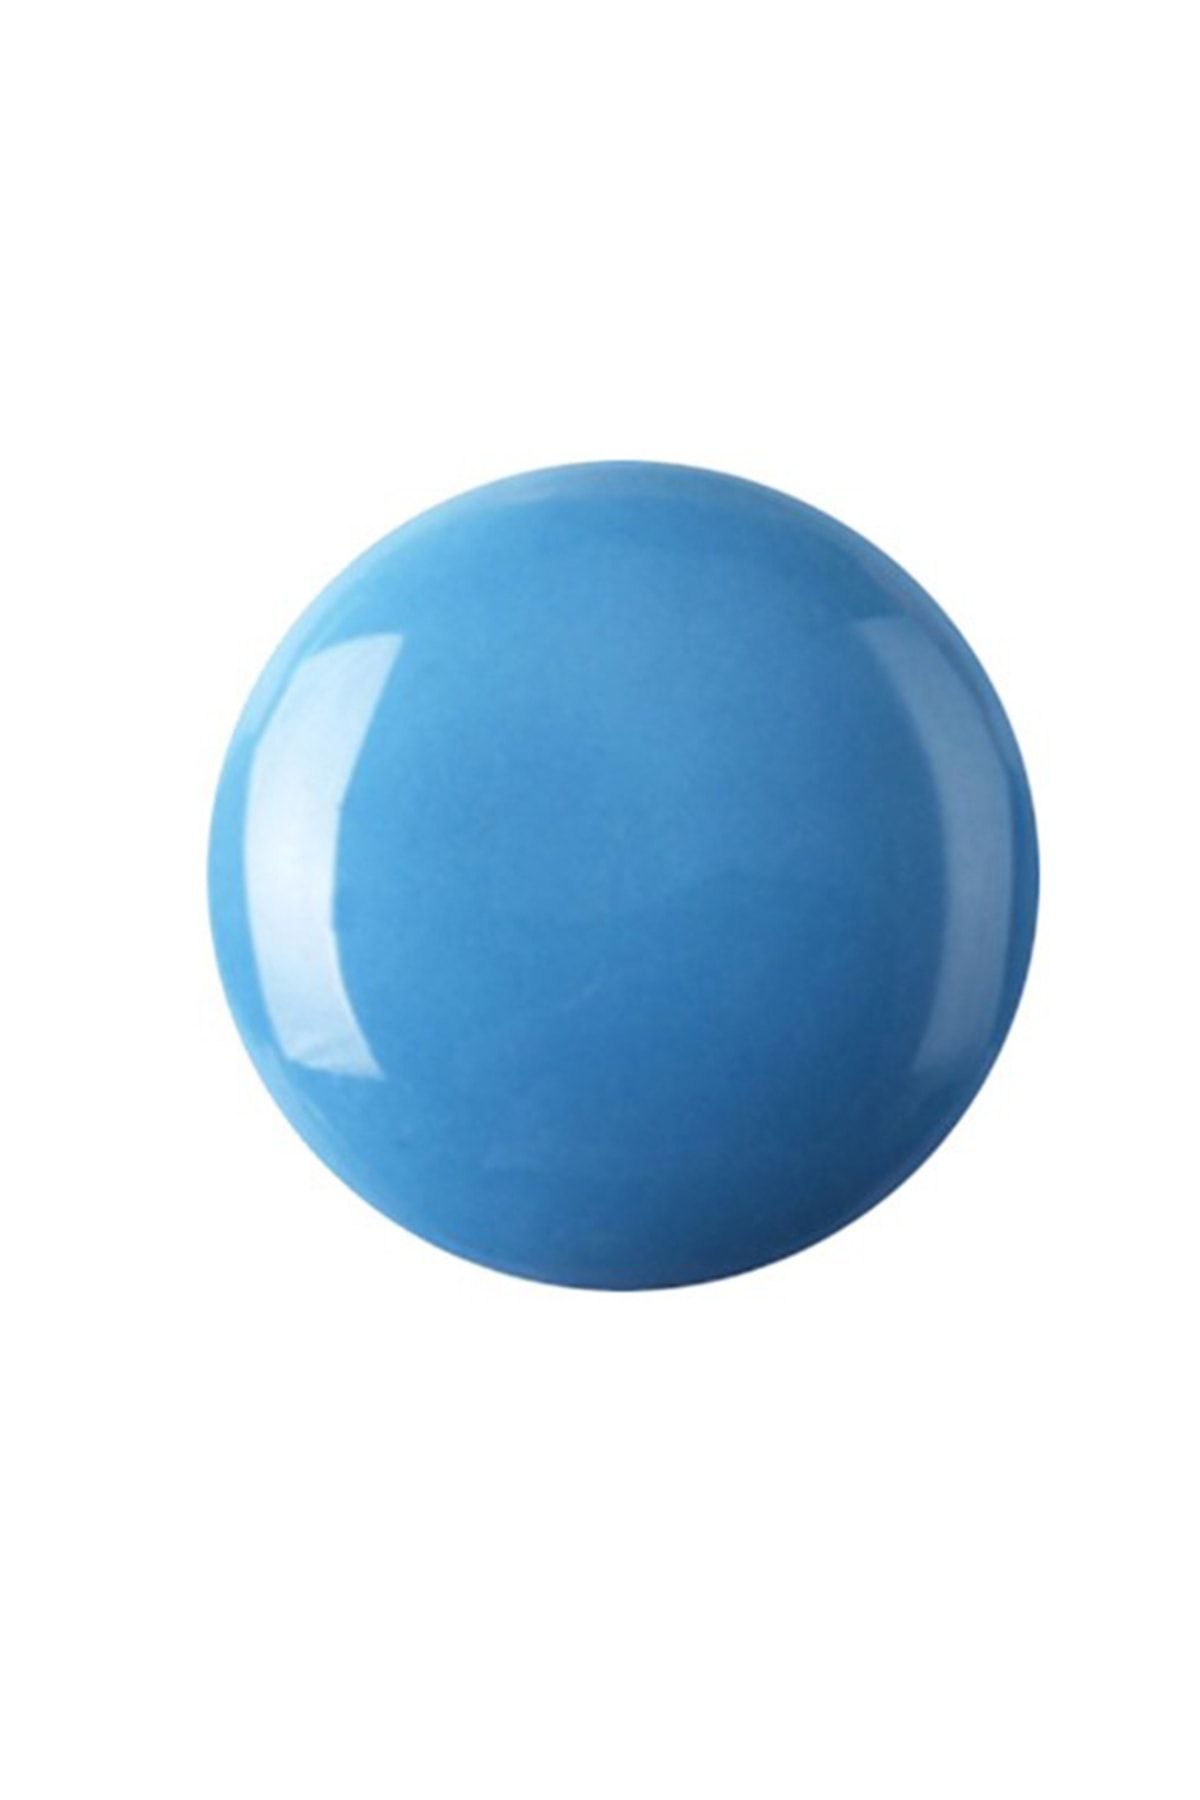 Refsan Renkli Hazır Seramik Sır 862-5 Turkuaz - Açık Mavi - Boncuk Mavi (1050 °C) - 5 Kg